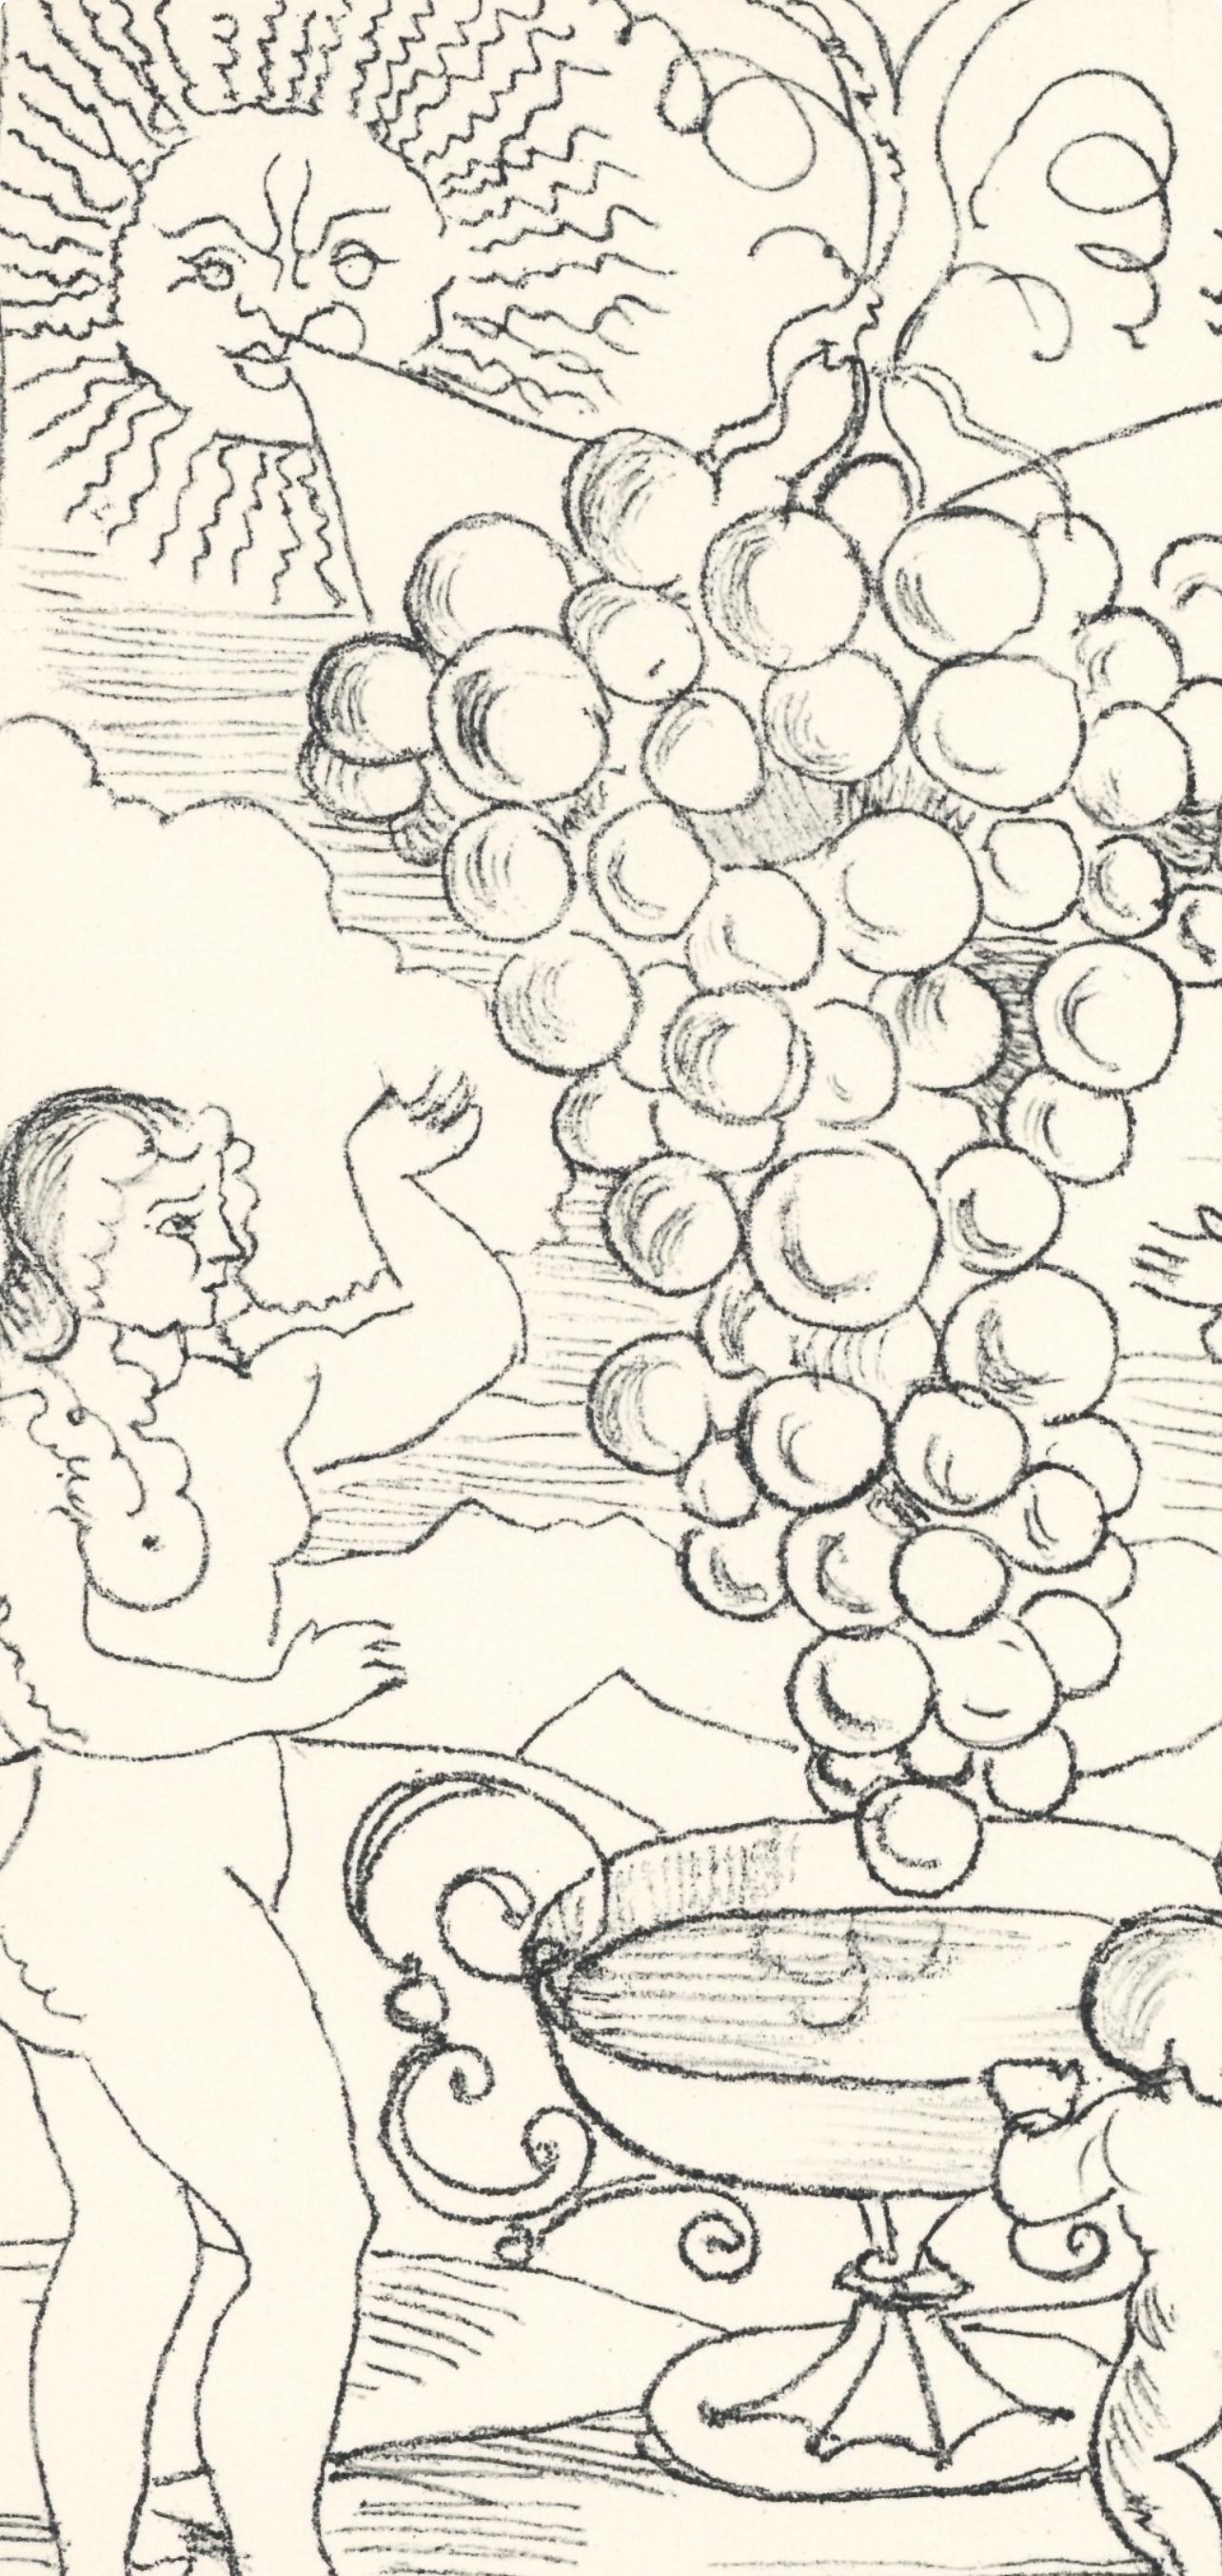 Derain, Age d'or et Terre promise, Vins, Fleurs et Flammes (after) - Print by André Derain